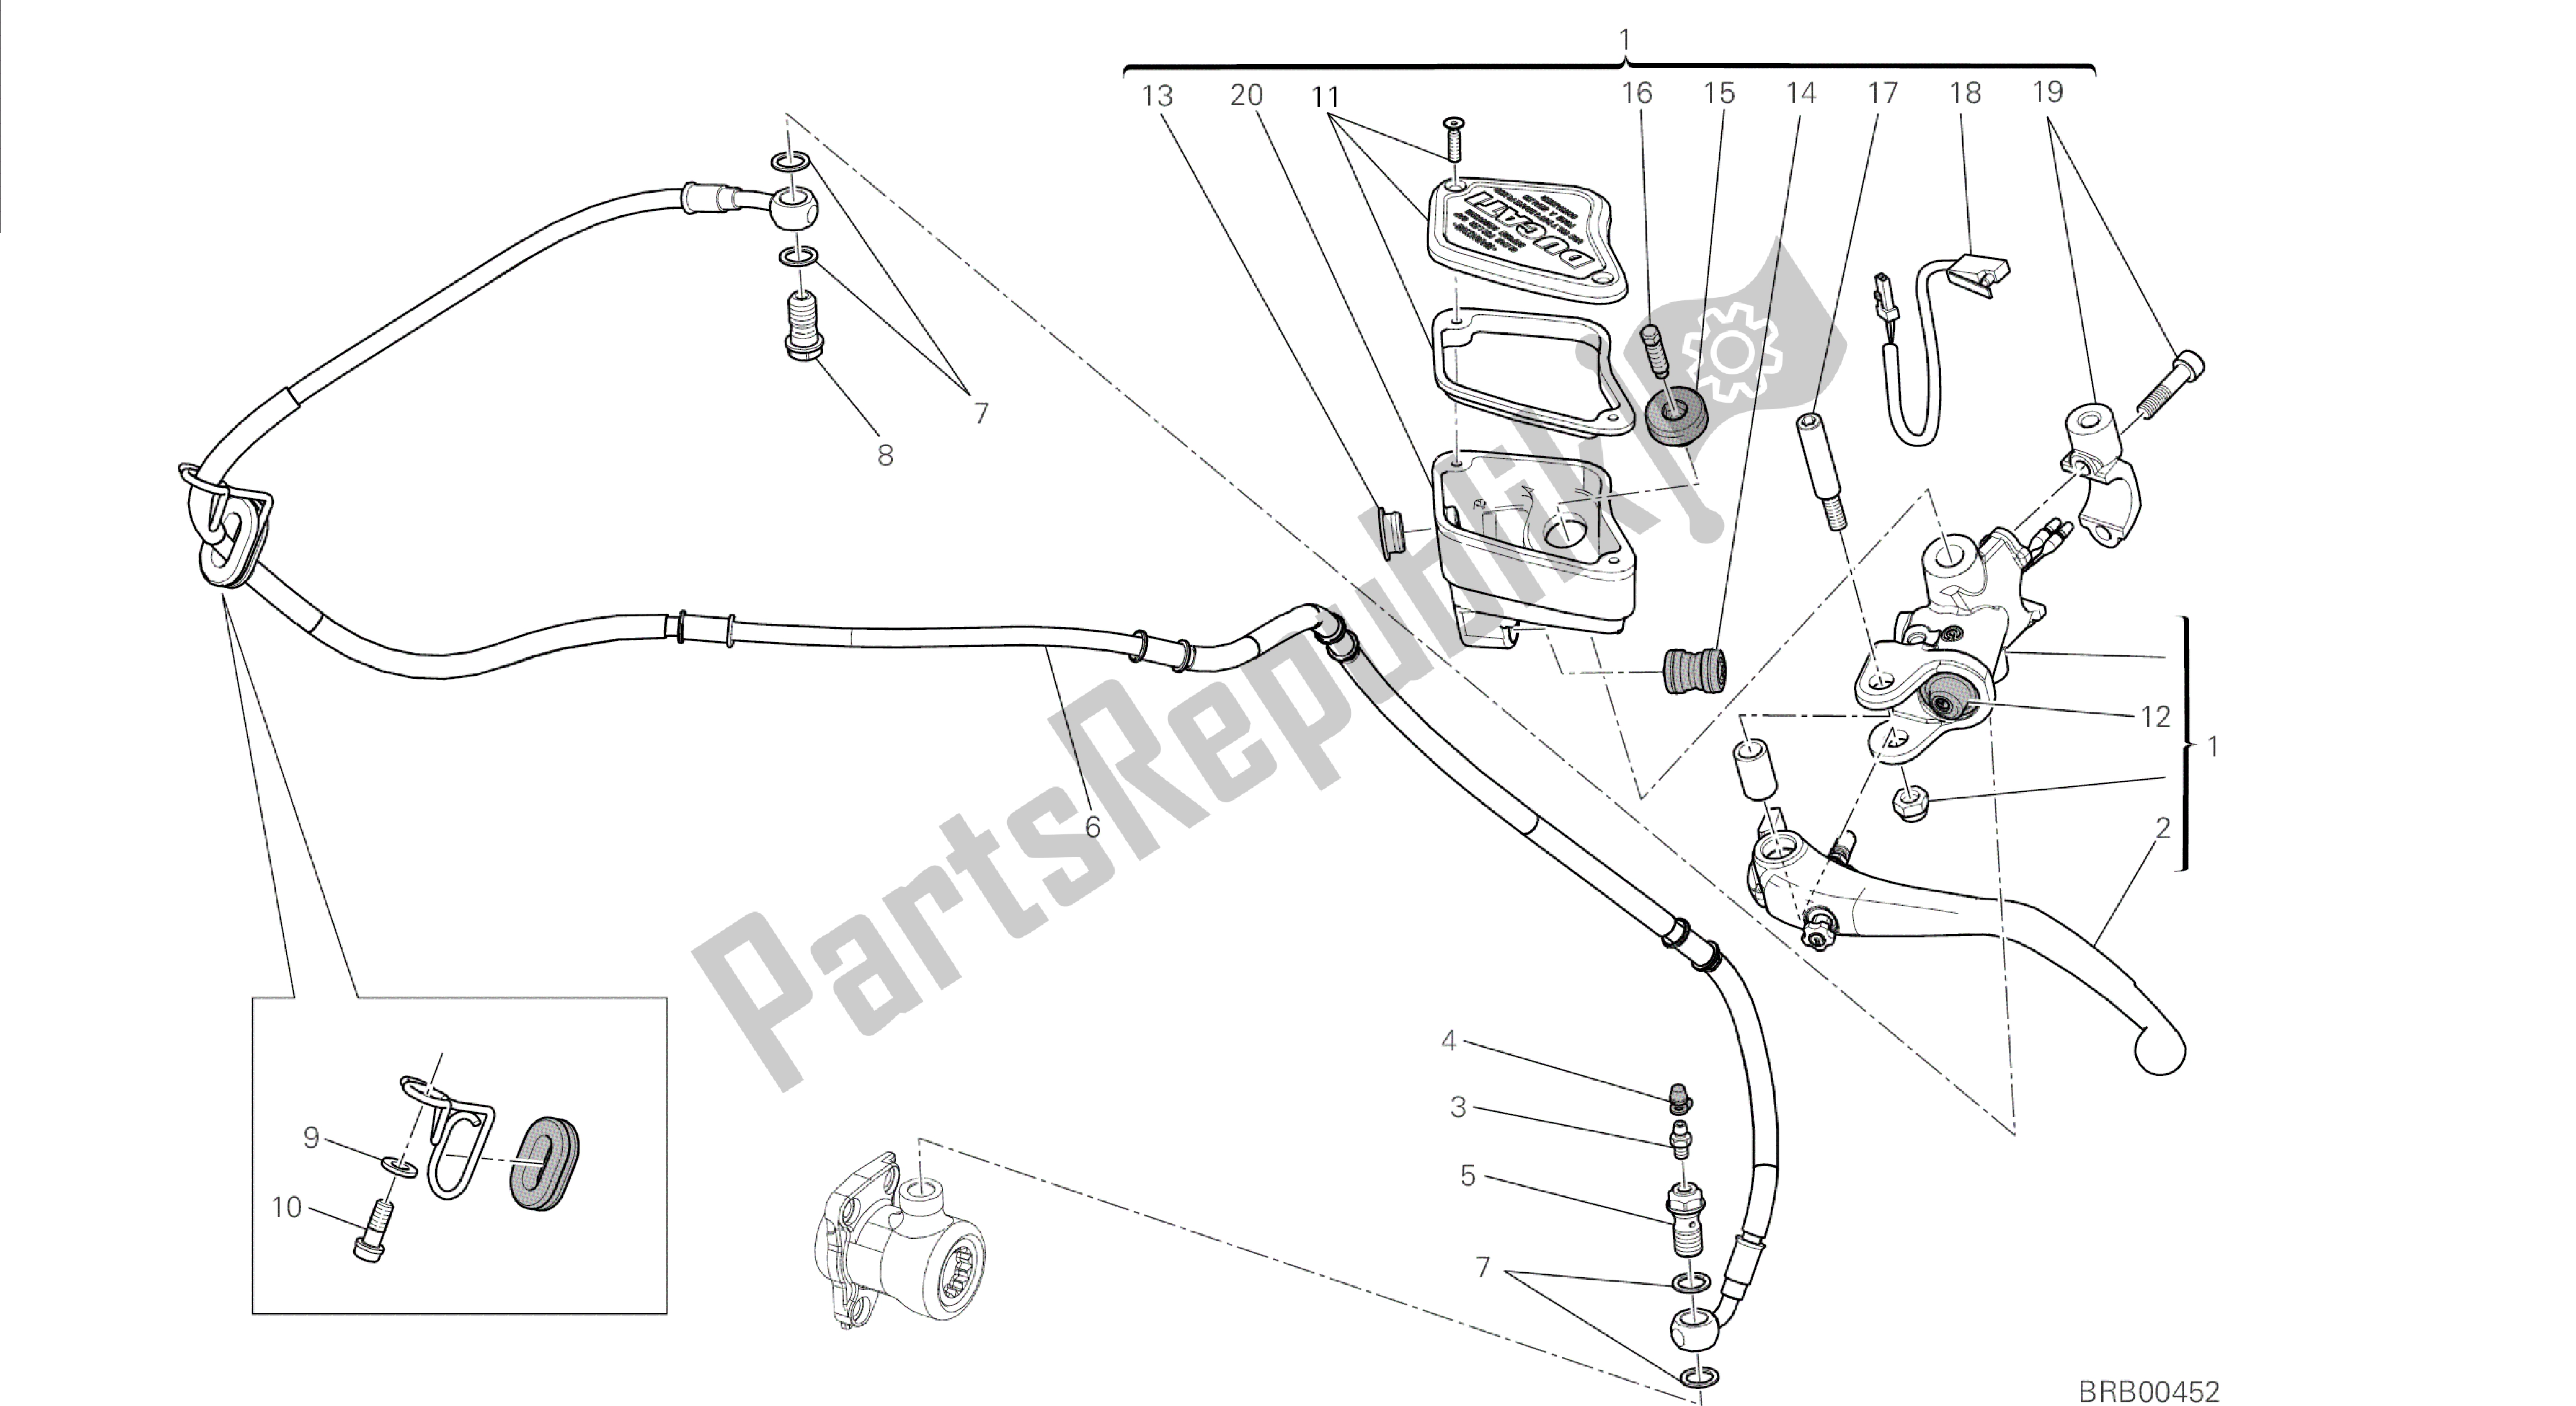 Tutte le parti per il Disegno 023 - Gruppo Pompa Frizione [mod: Dvl] Telaio Gruppo del Ducati Diavel 1200 2014